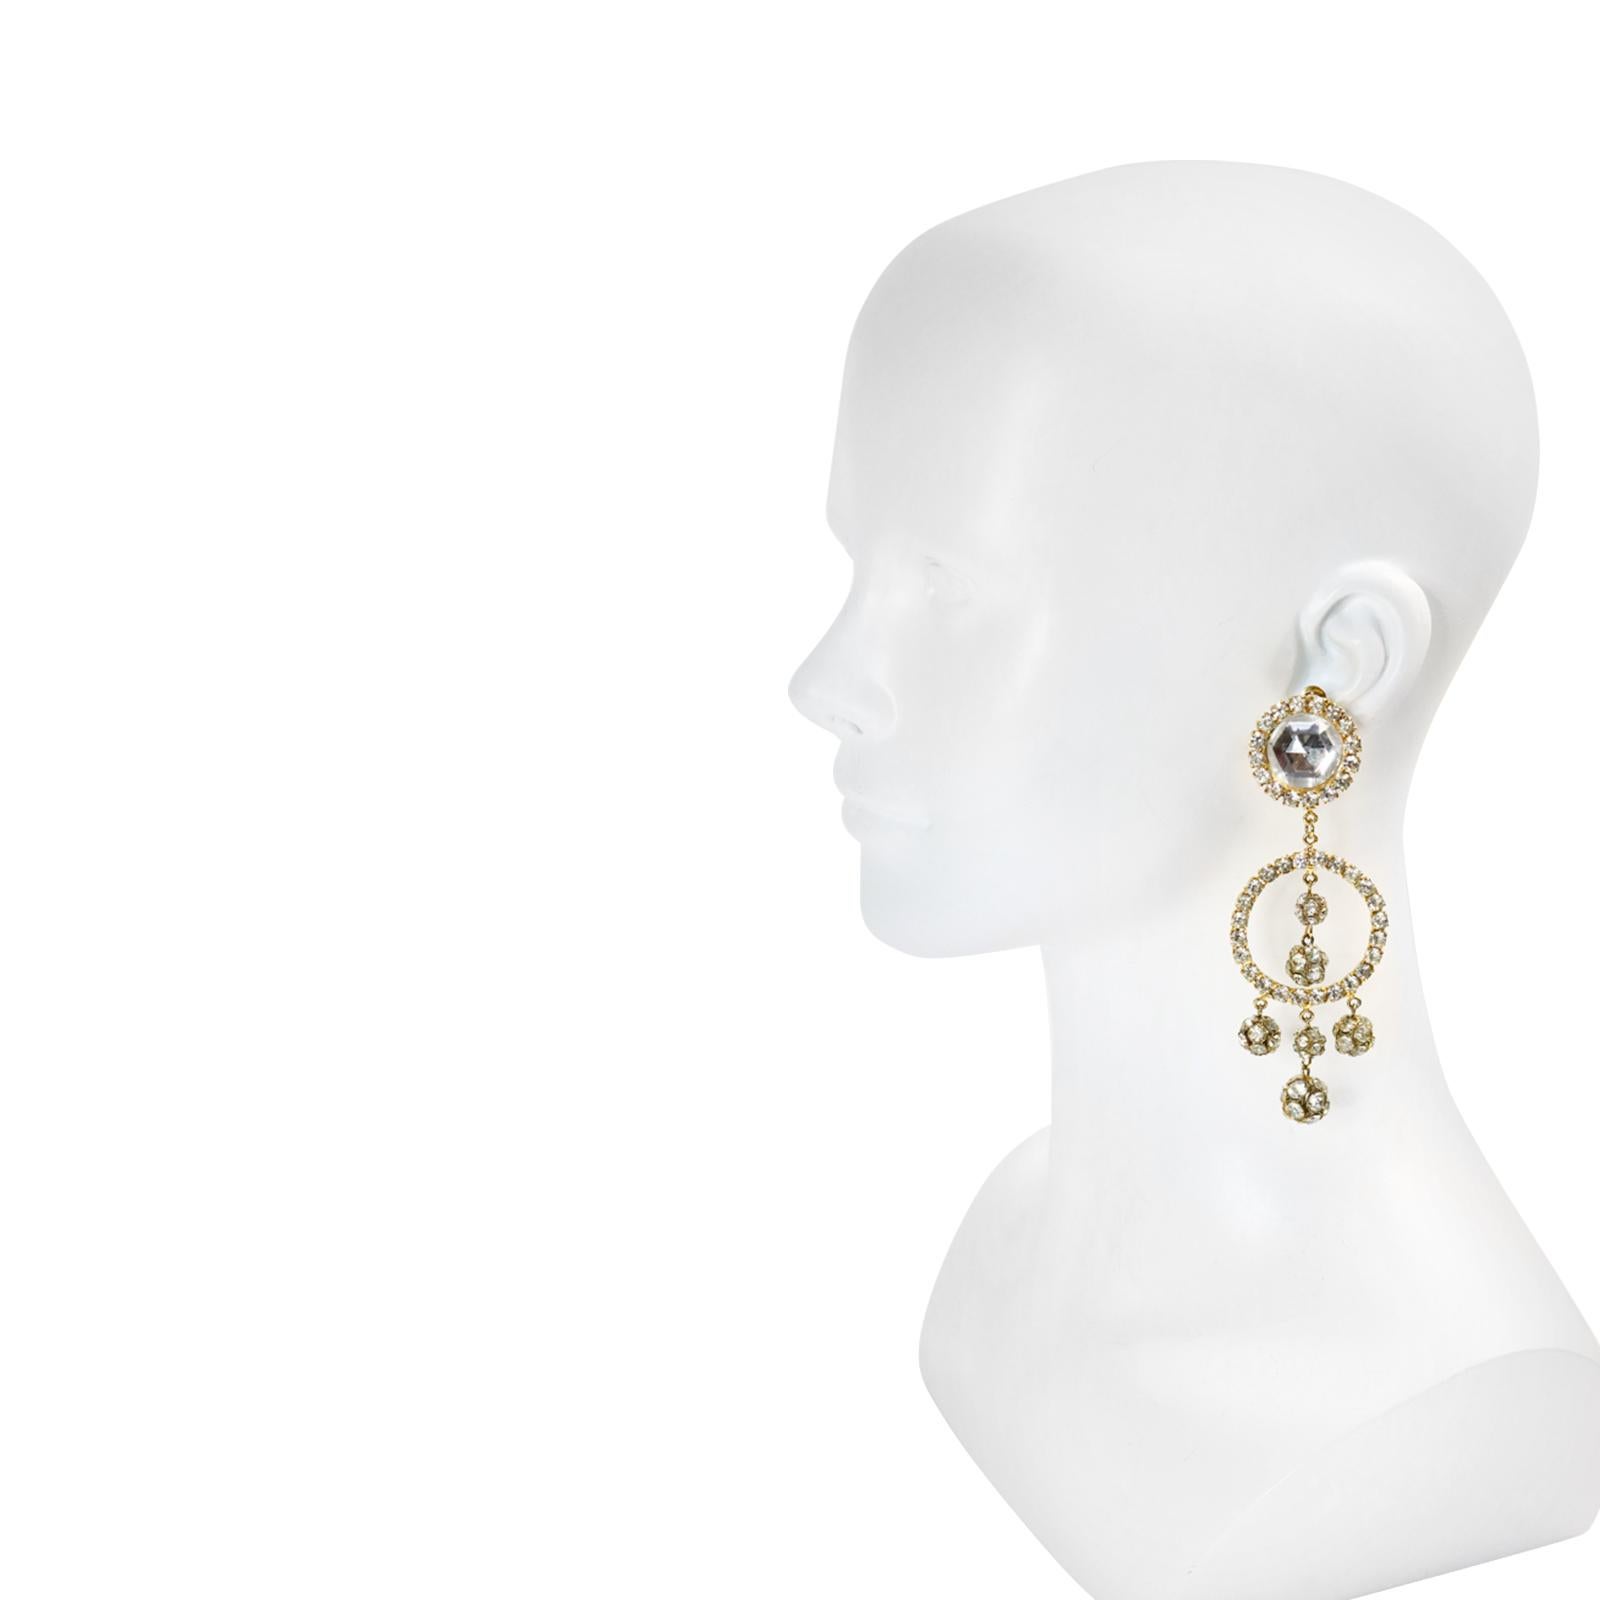 1960's earrings